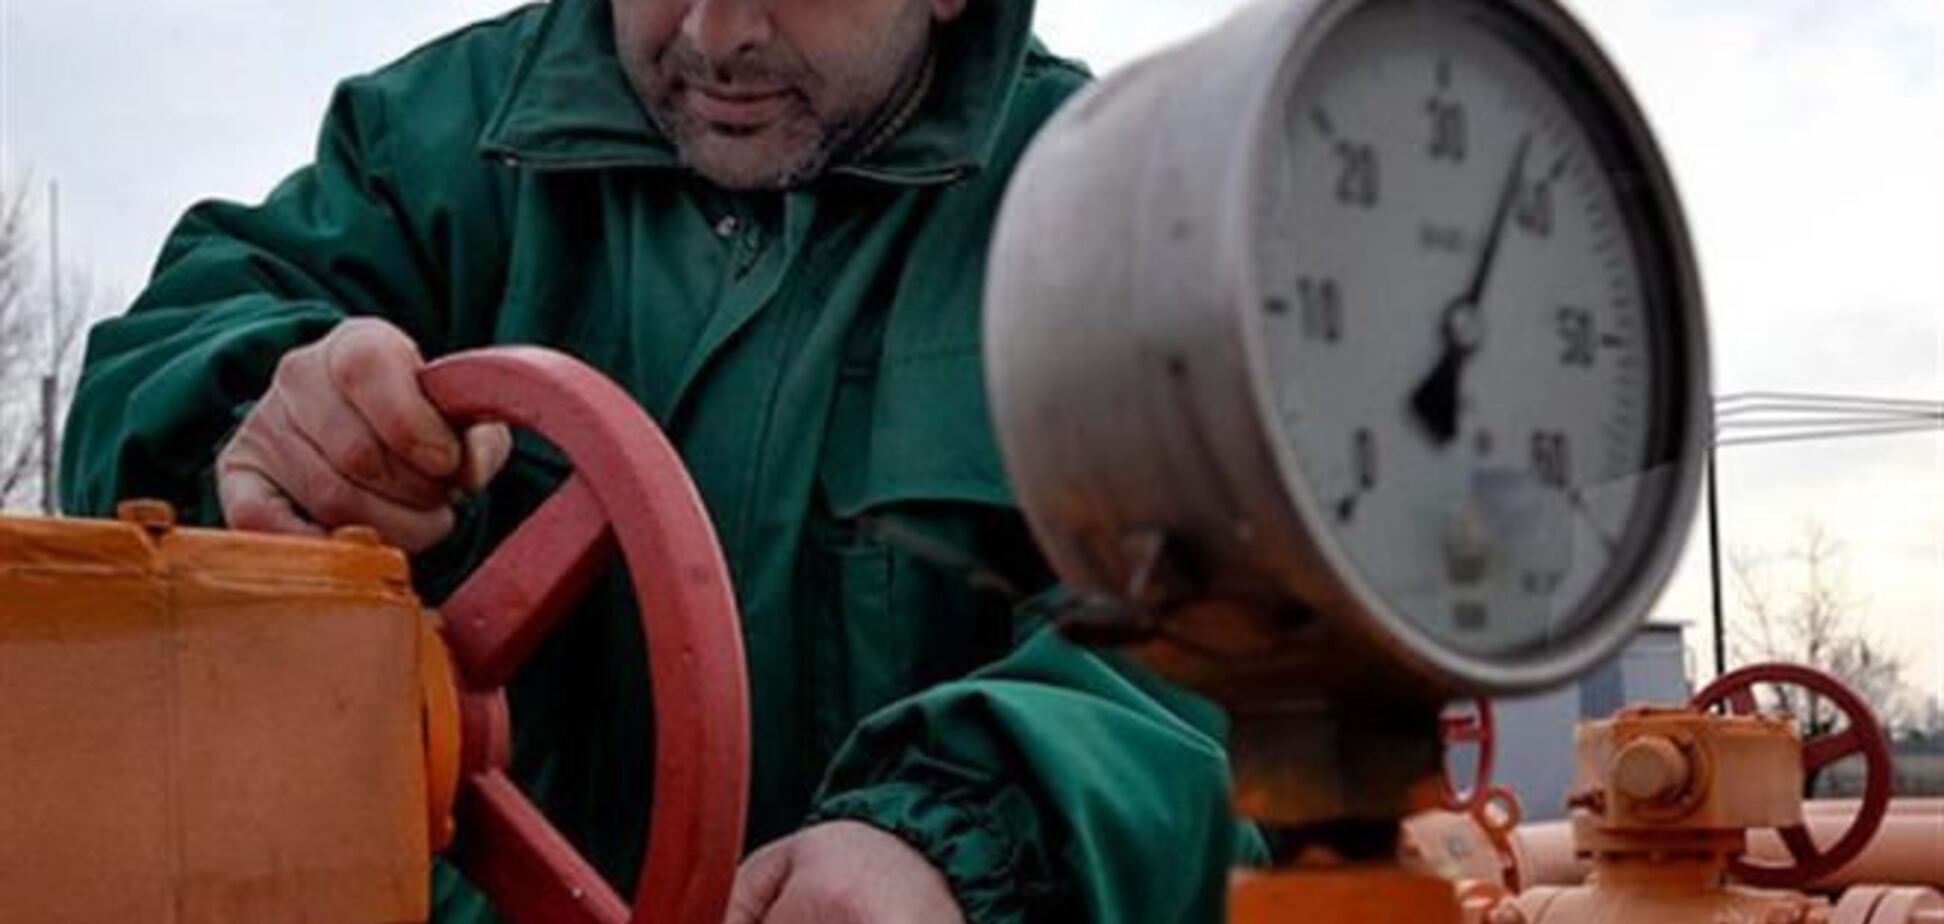 ПР: Україна купуватиме у Росії лише необхідний обсяг газу